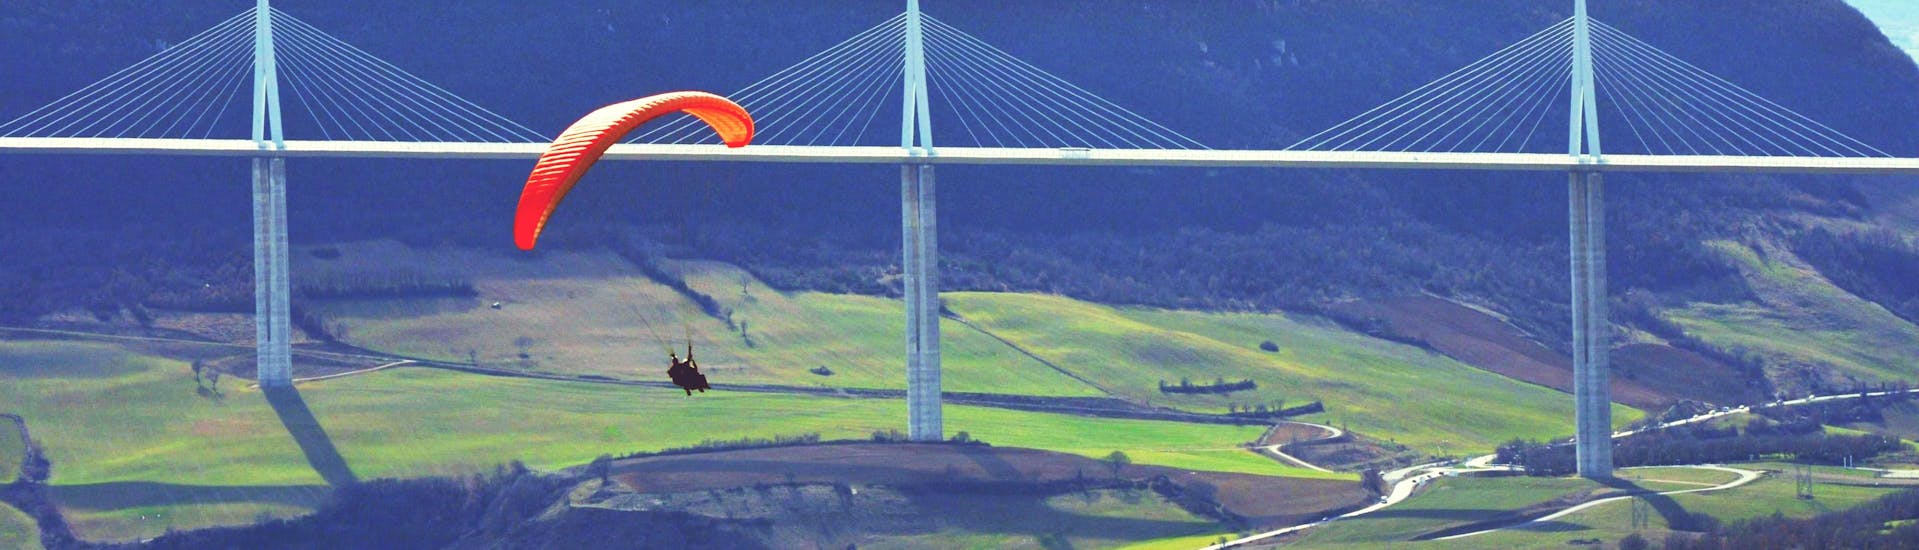 Acrobatisch tandemparagliden in Millau (vanaf 12 j.) - Grands Causses (regionaal natuurpark).